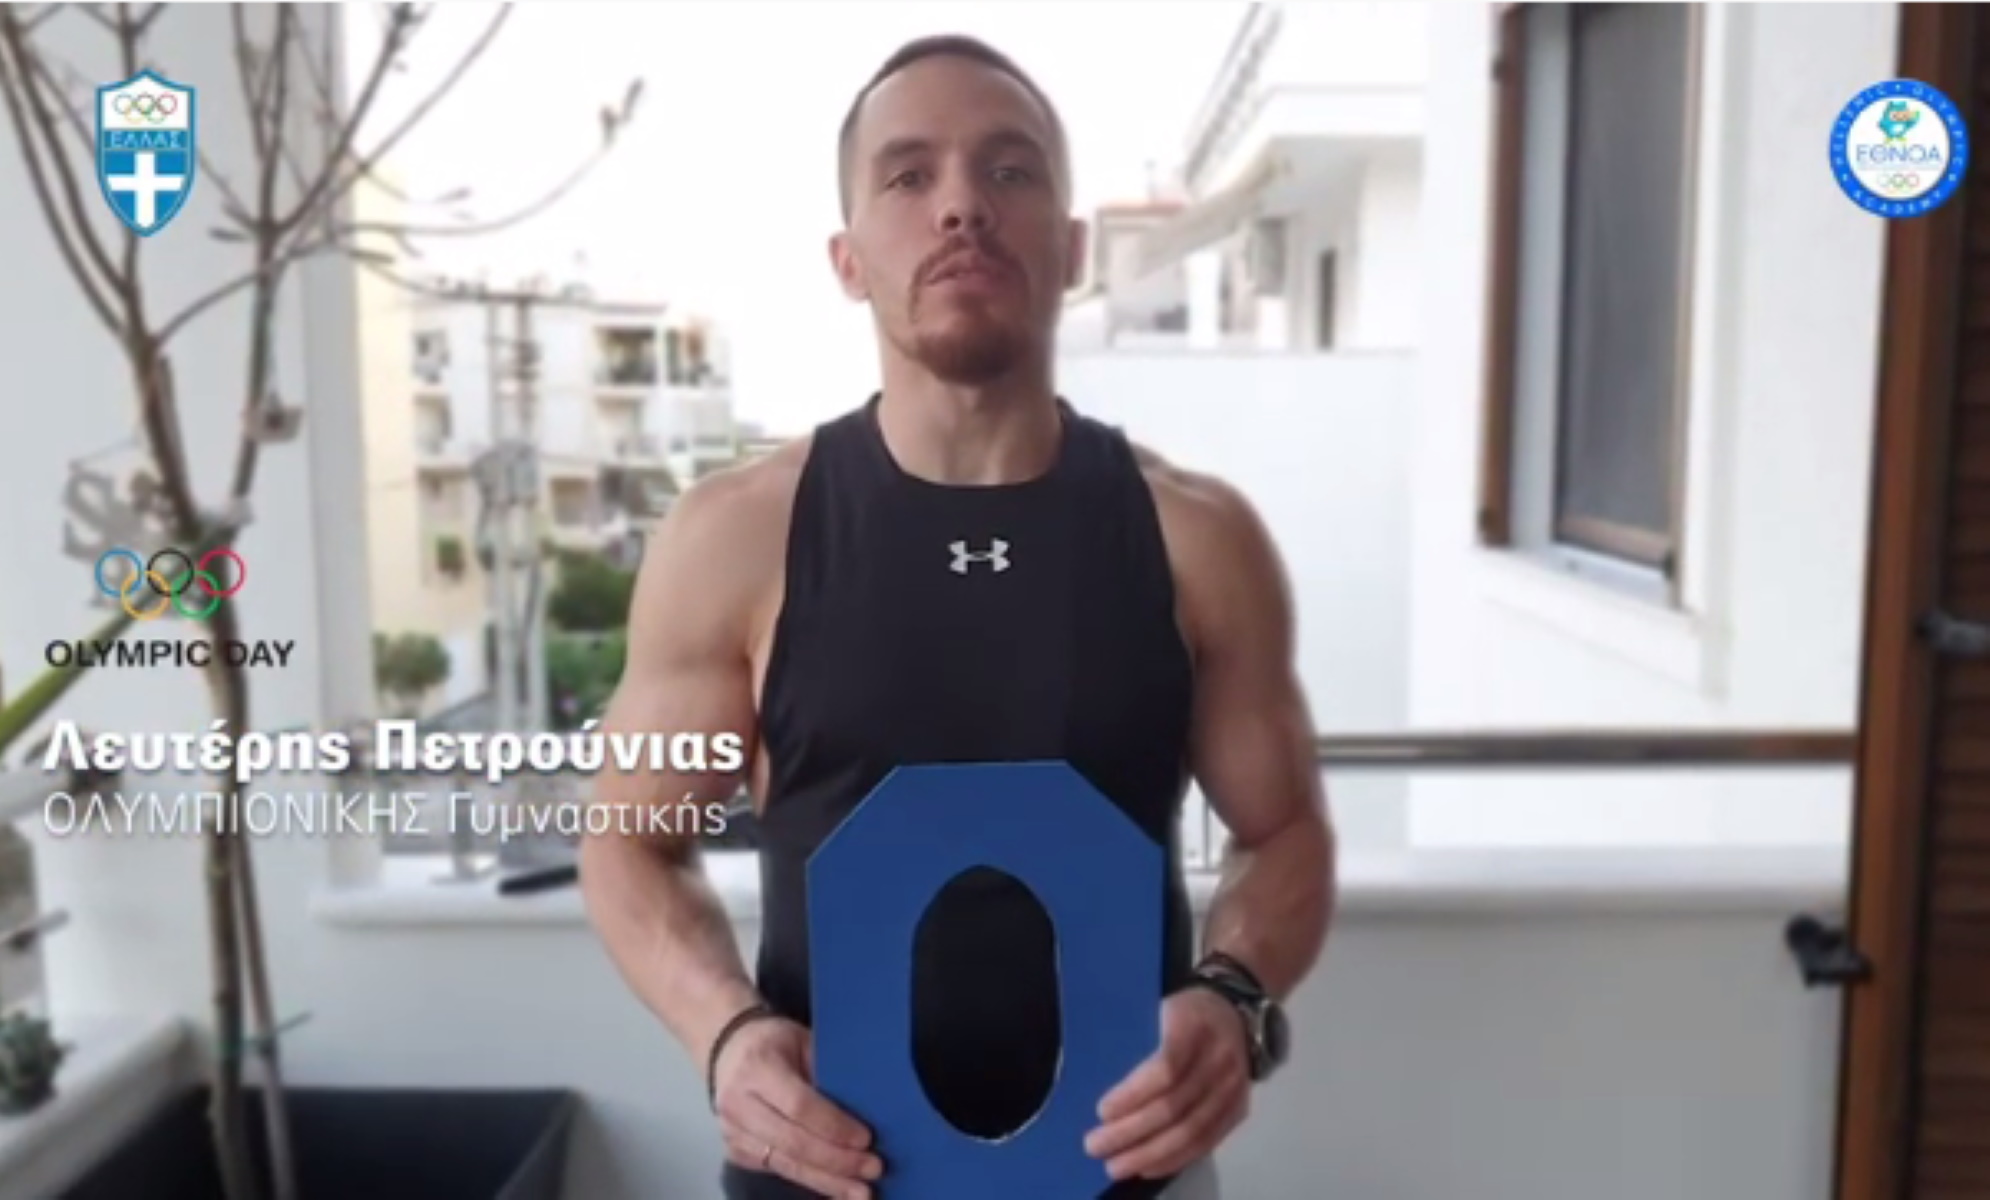 Η ΕΟΕ γιορτάζει την Ολυμπιακή Ημέρα με ένα video γεμάτο “αστέρια”